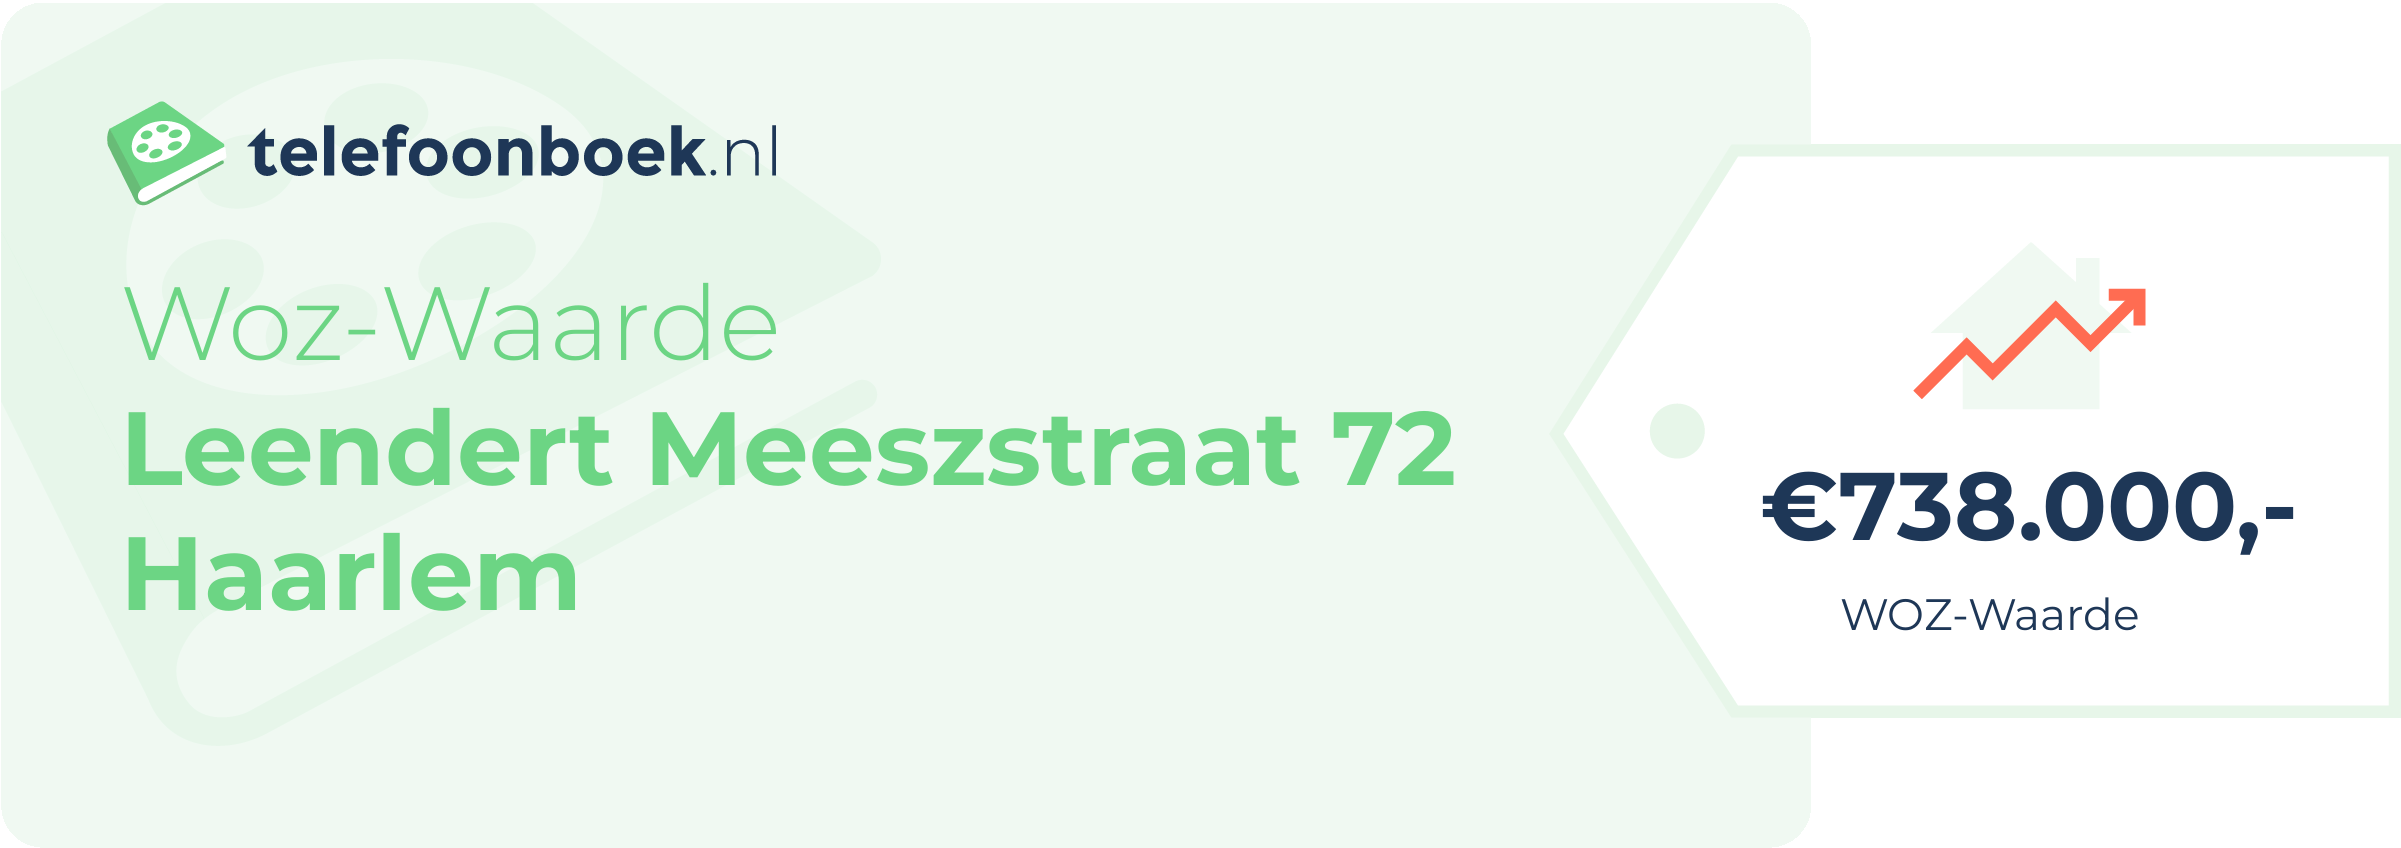 WOZ-waarde Leendert Meeszstraat 72 Haarlem